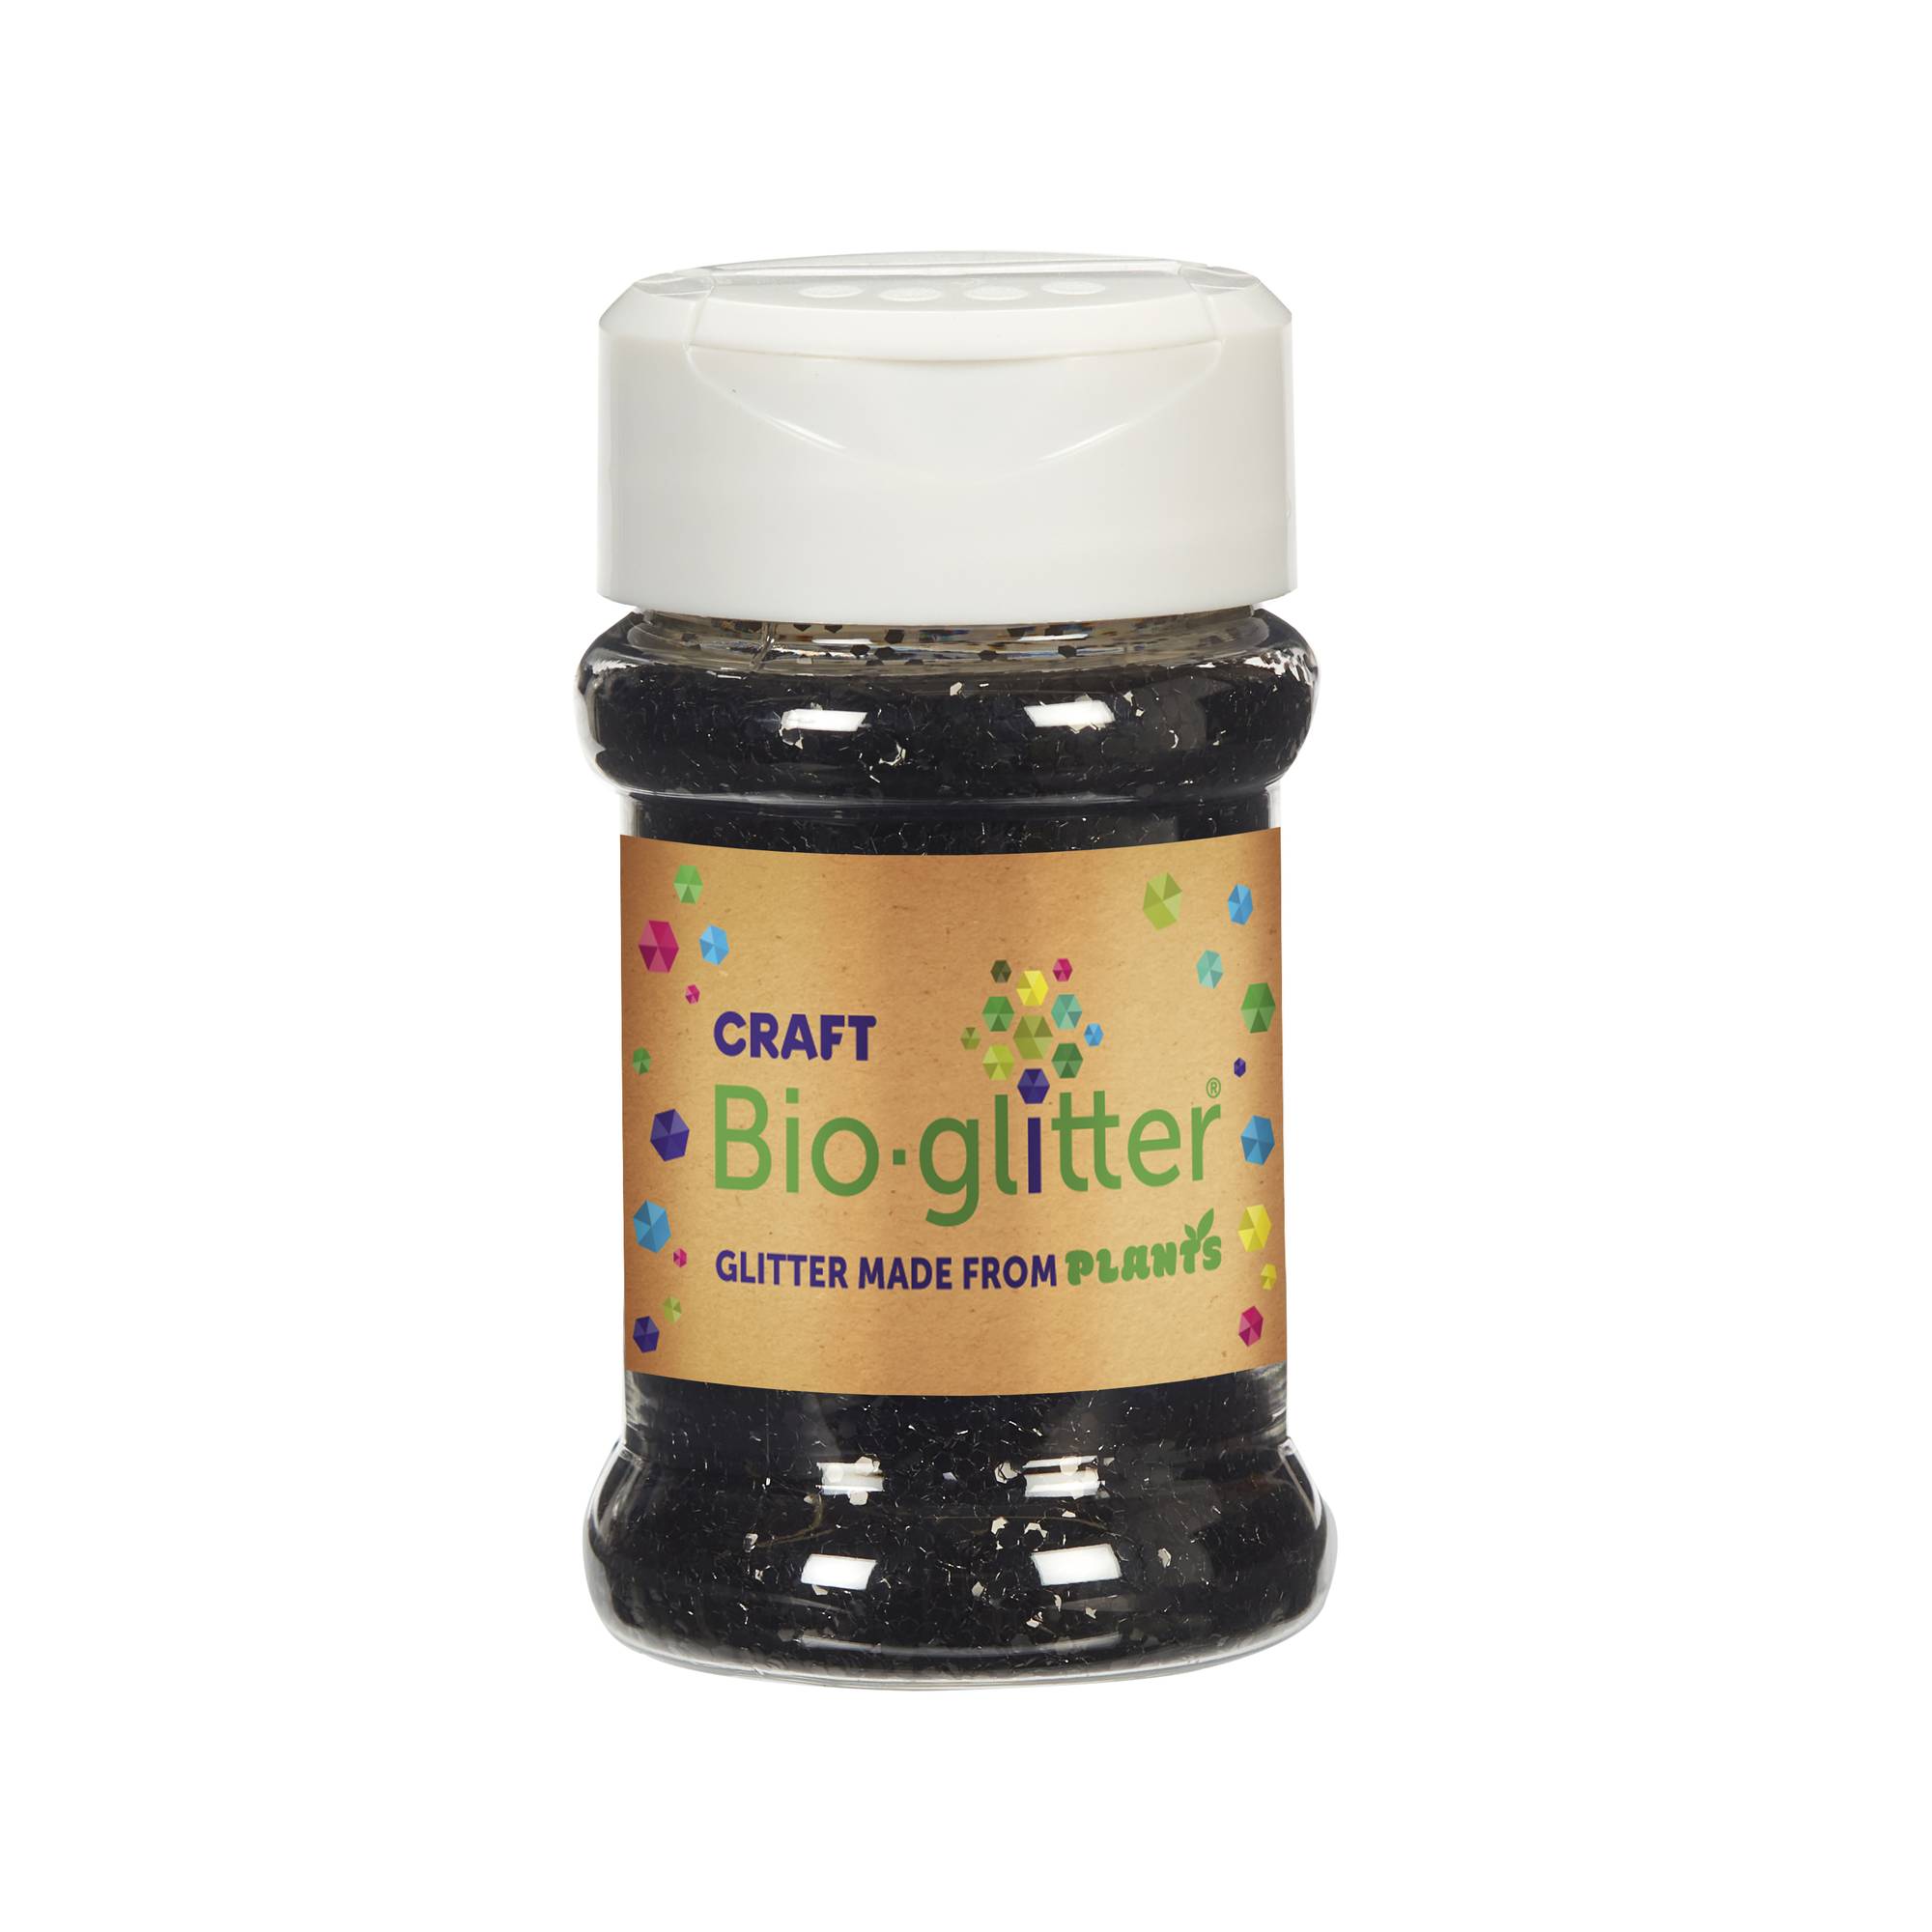 Black Craft Bioglitter Shaker 40g